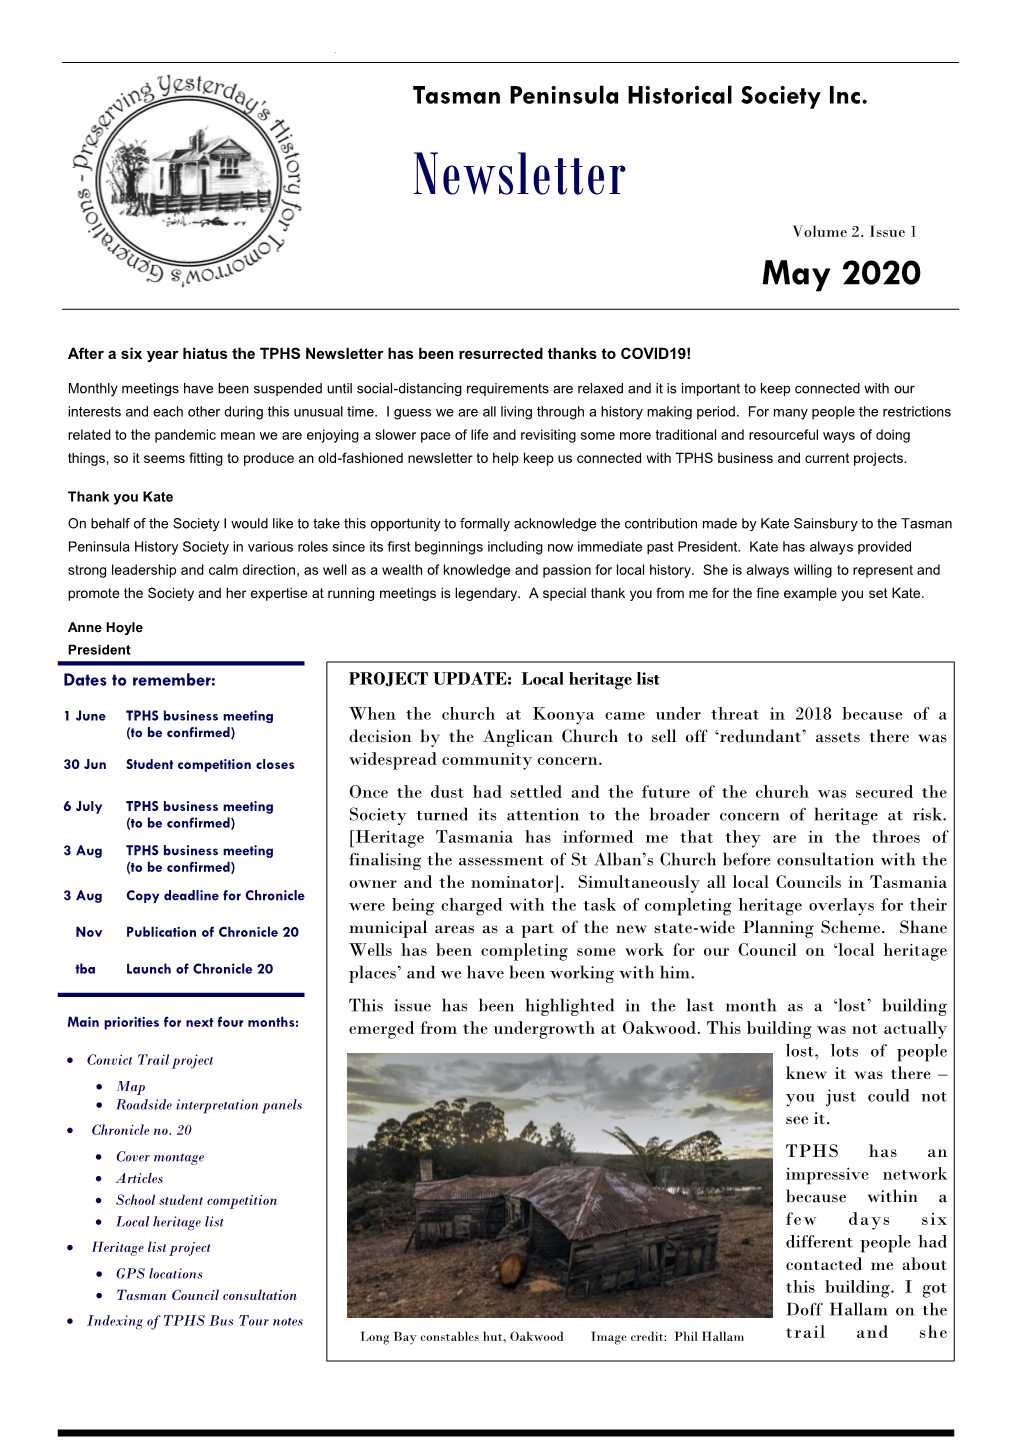 May 2020 TPHS Newsletter